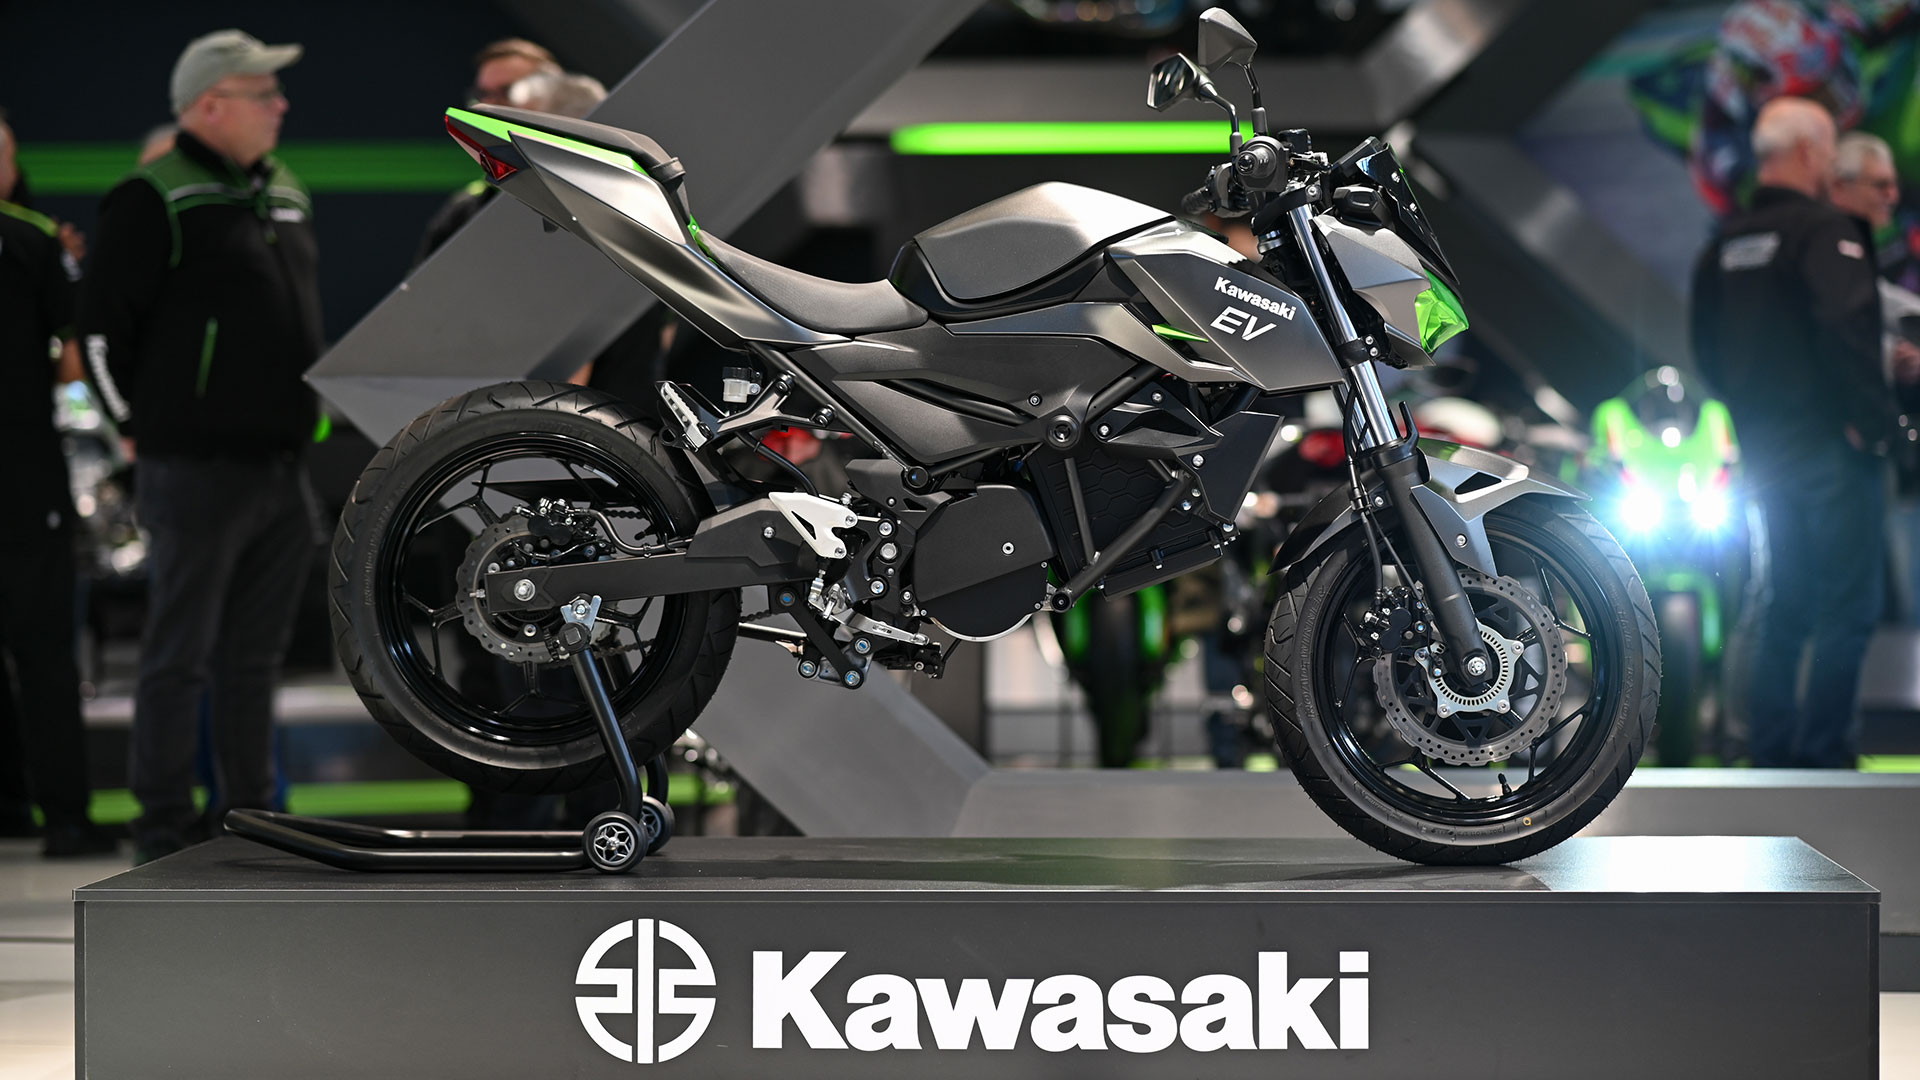 Kawasaki presenta el prototipo de su primera eléctrica en Intermot